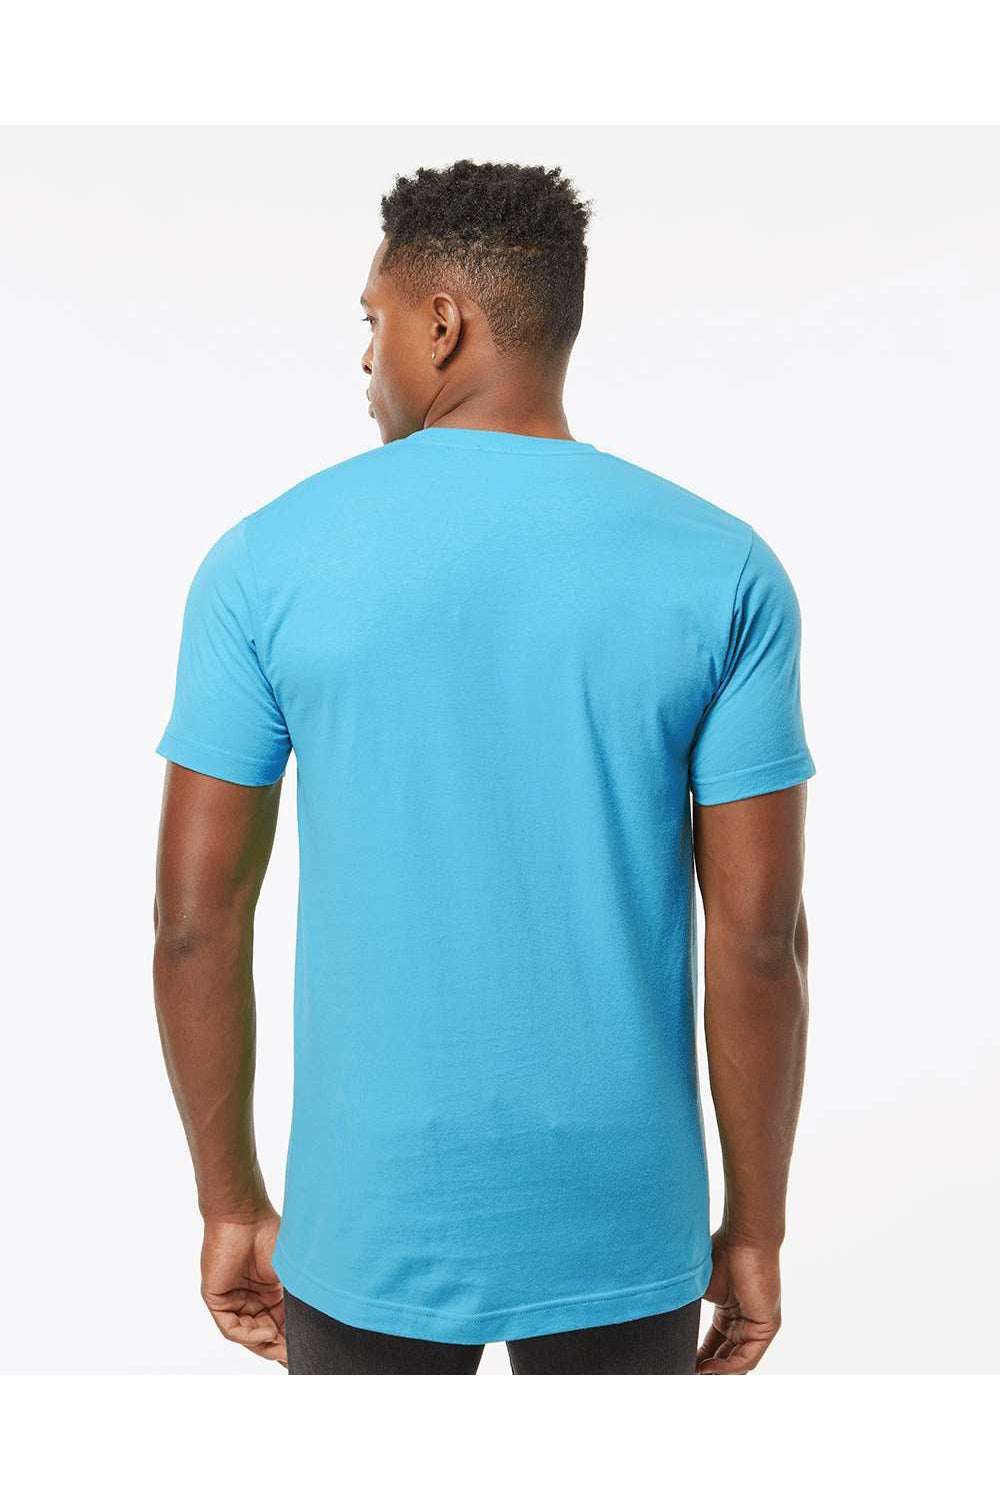 Tultex 202 Mens Fine Jersey Short Sleeve Crewneck T-Shirt Aqua Blue Model Back